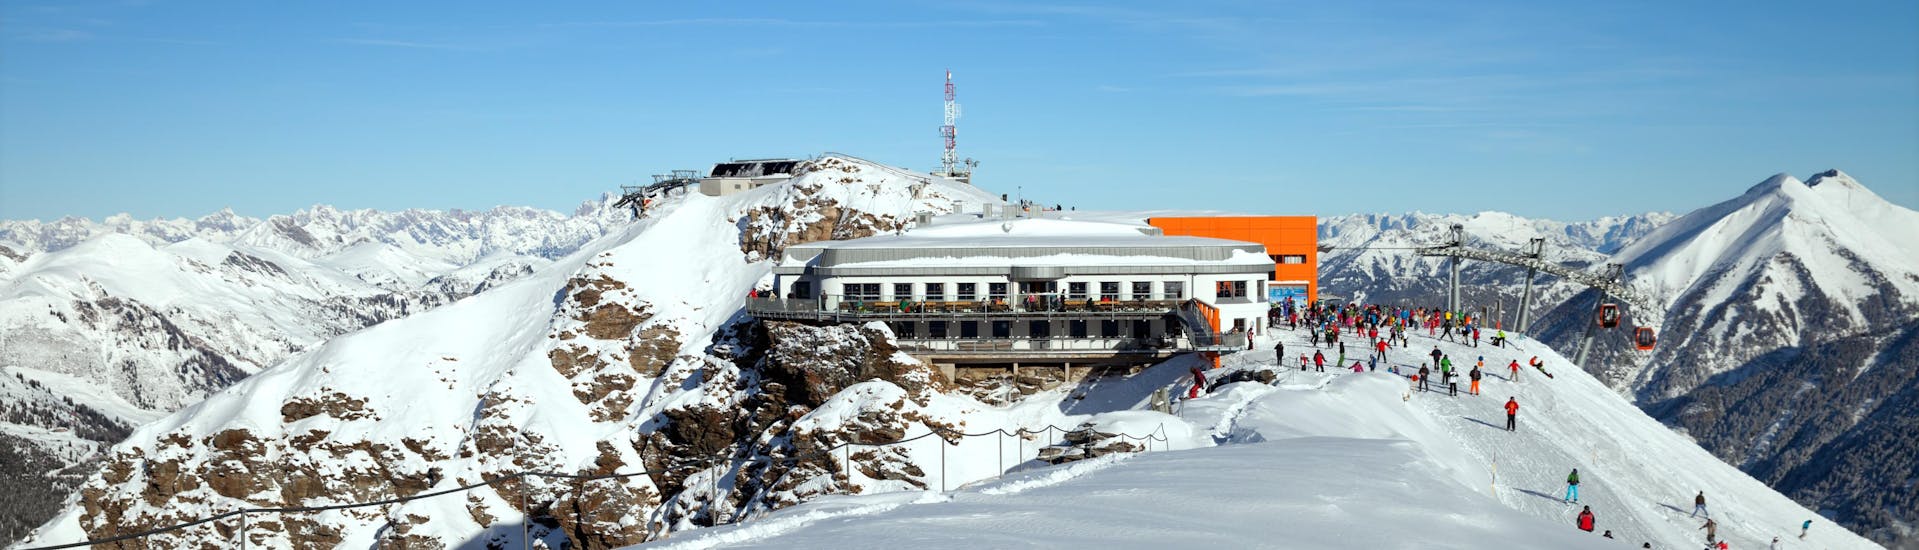 Ausblick auf die sonnige Berglandschaft beim Skifahren lernen mit den Skischulen in Bad Gastein.